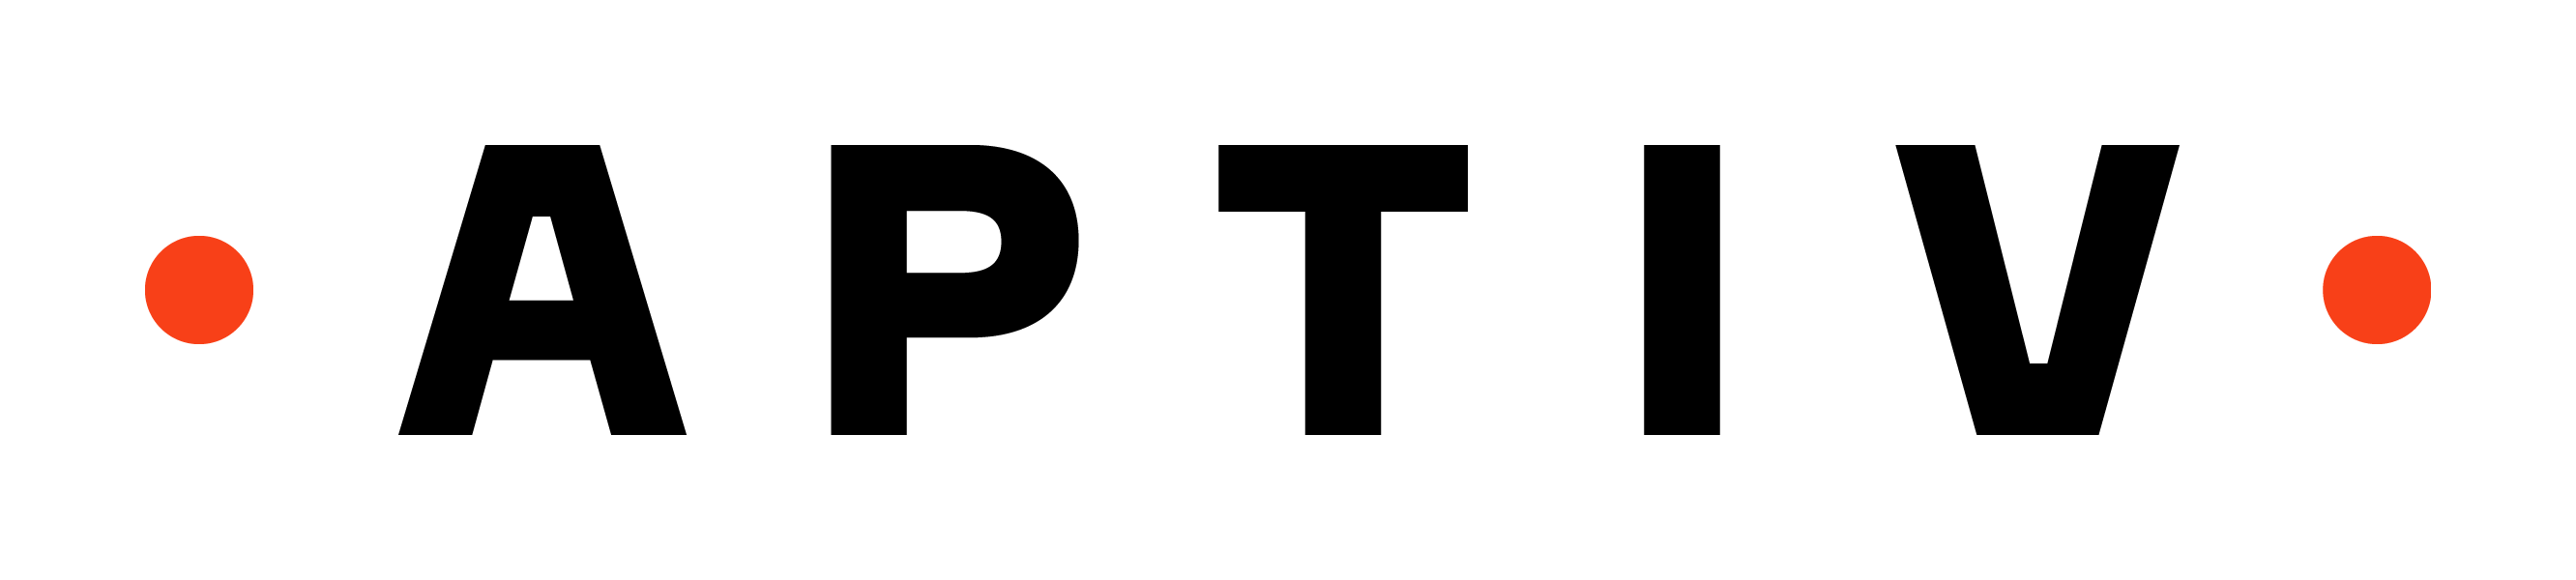 Partner logo - Aptiv